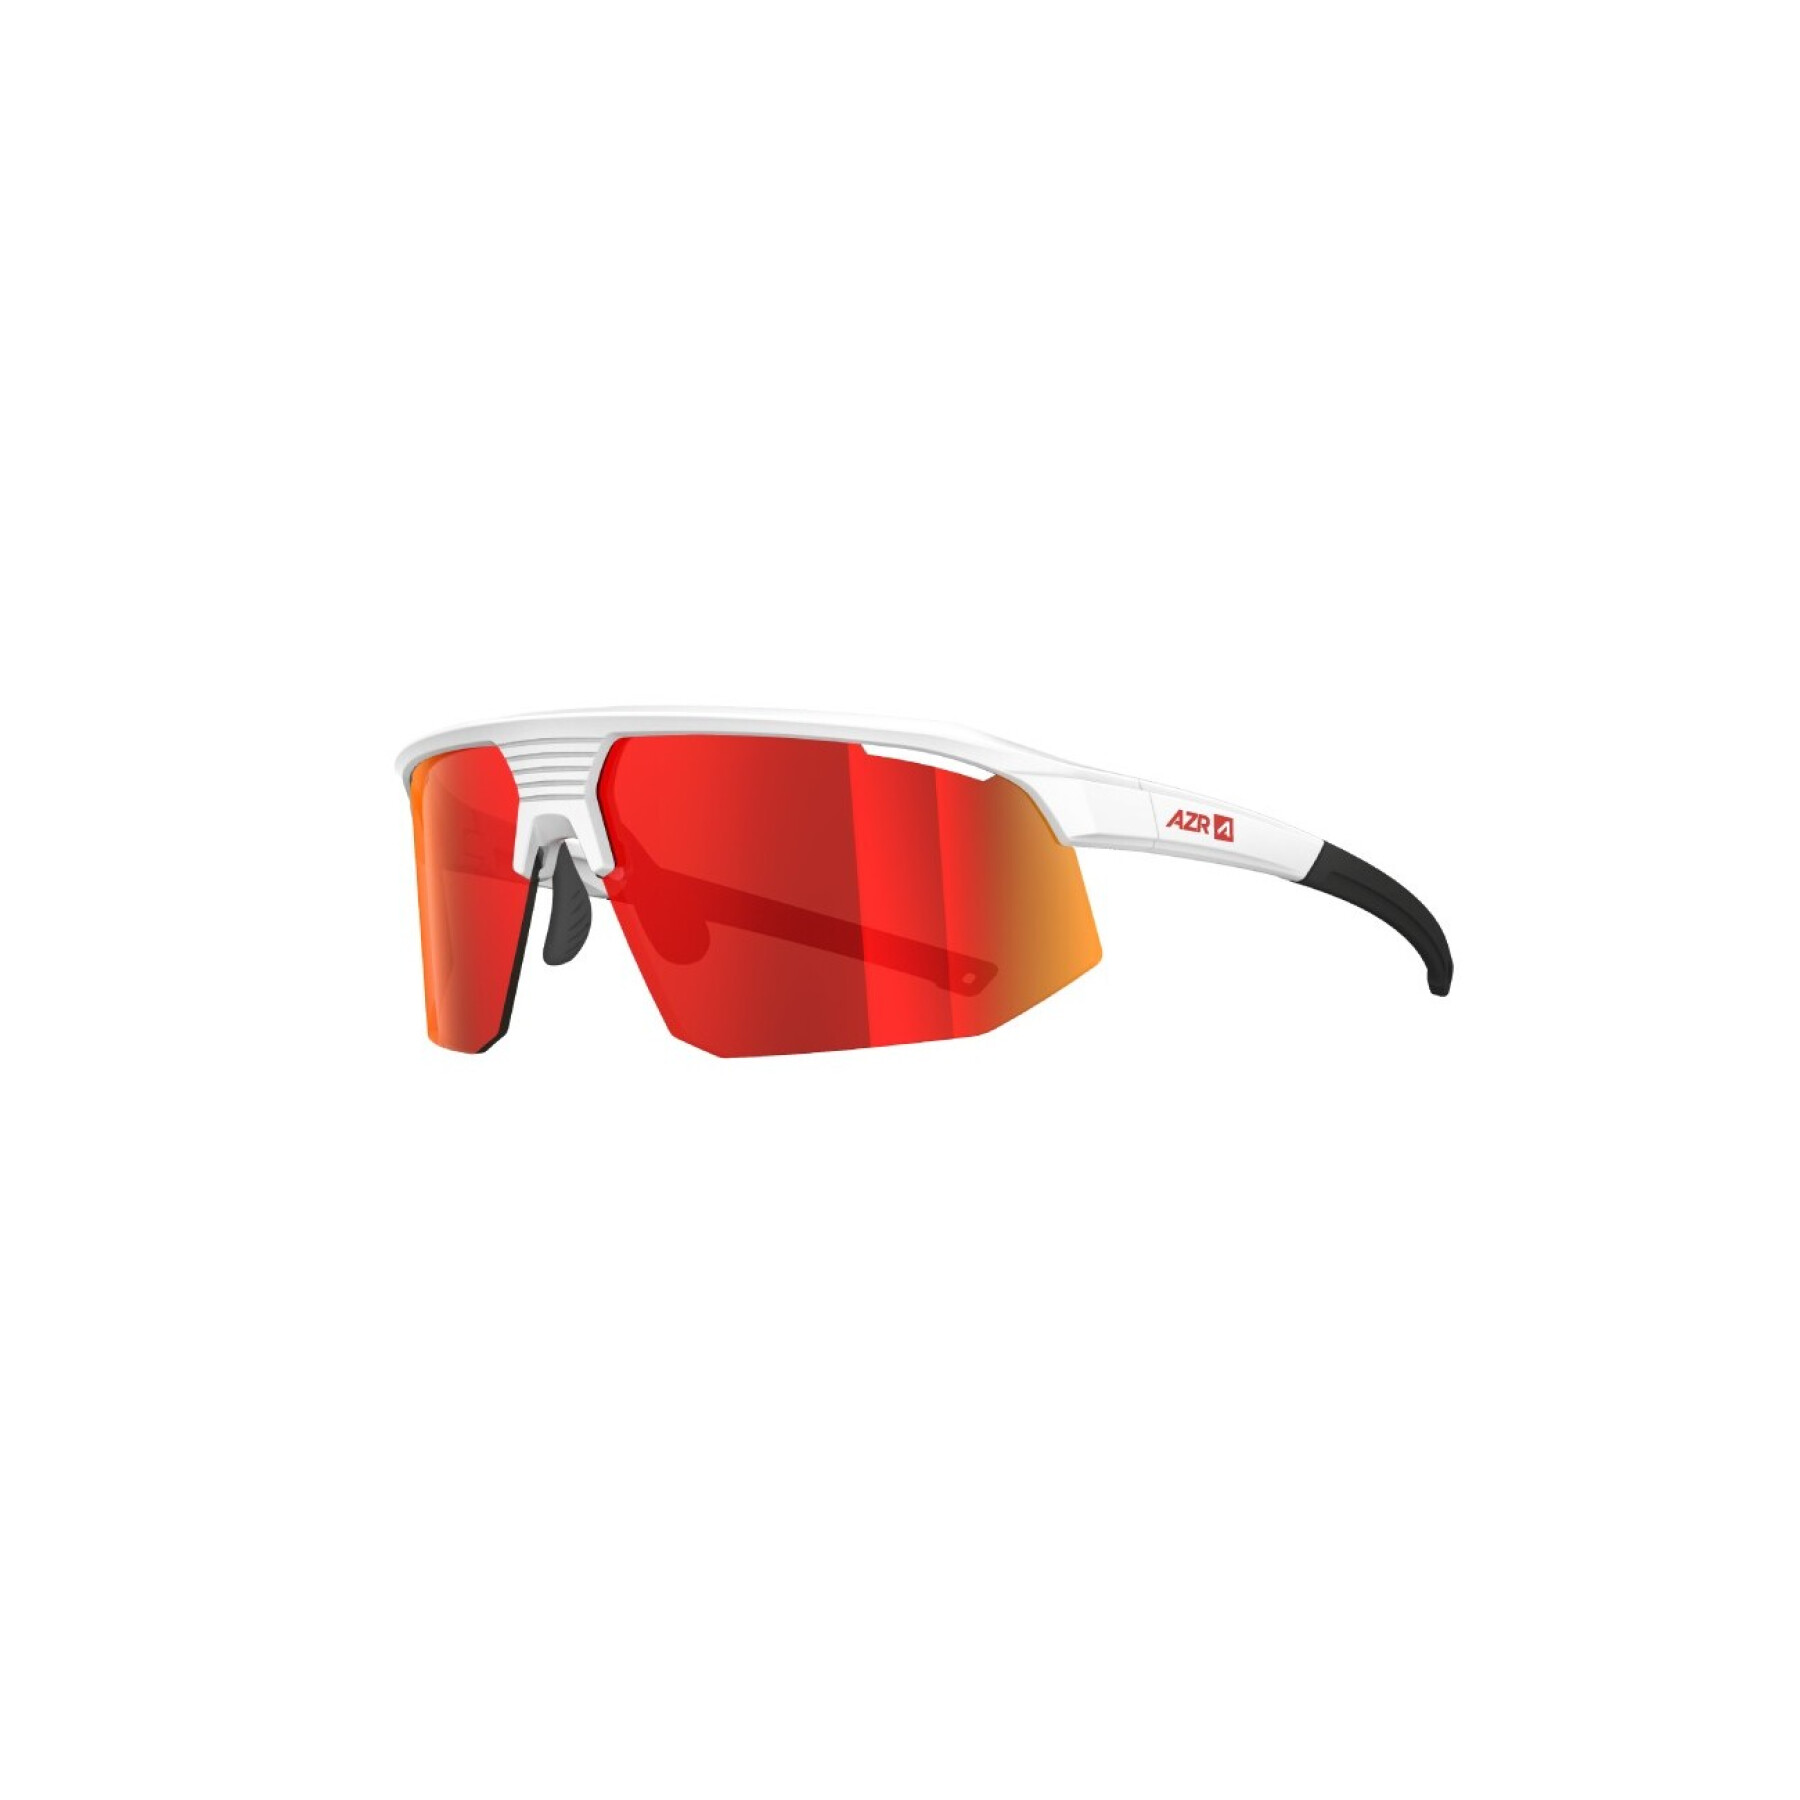 Gafas de sol AZR Pro Arrow RX